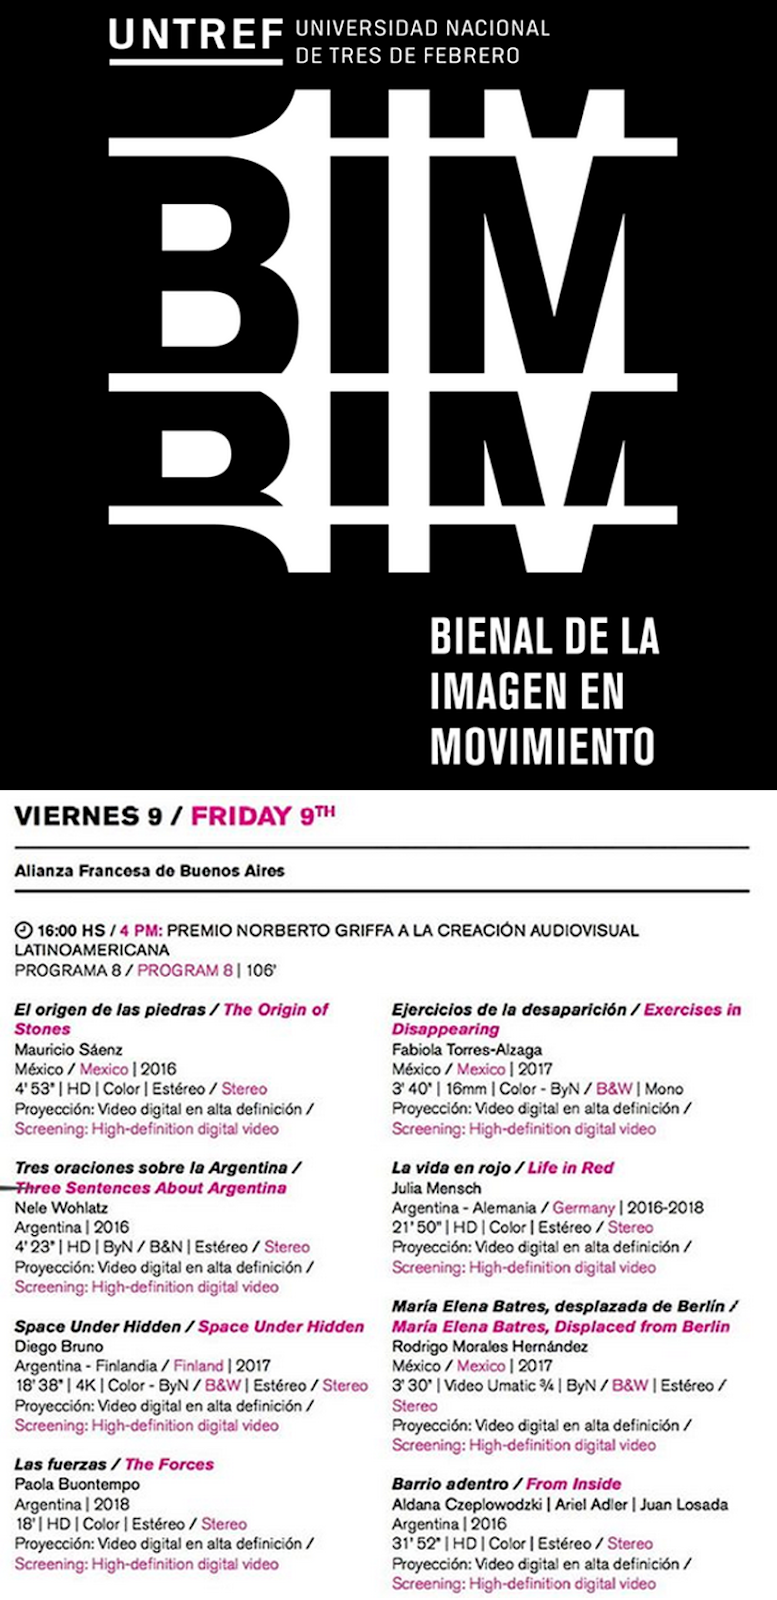 BIM - Bienal de la Imagen en Movimiento